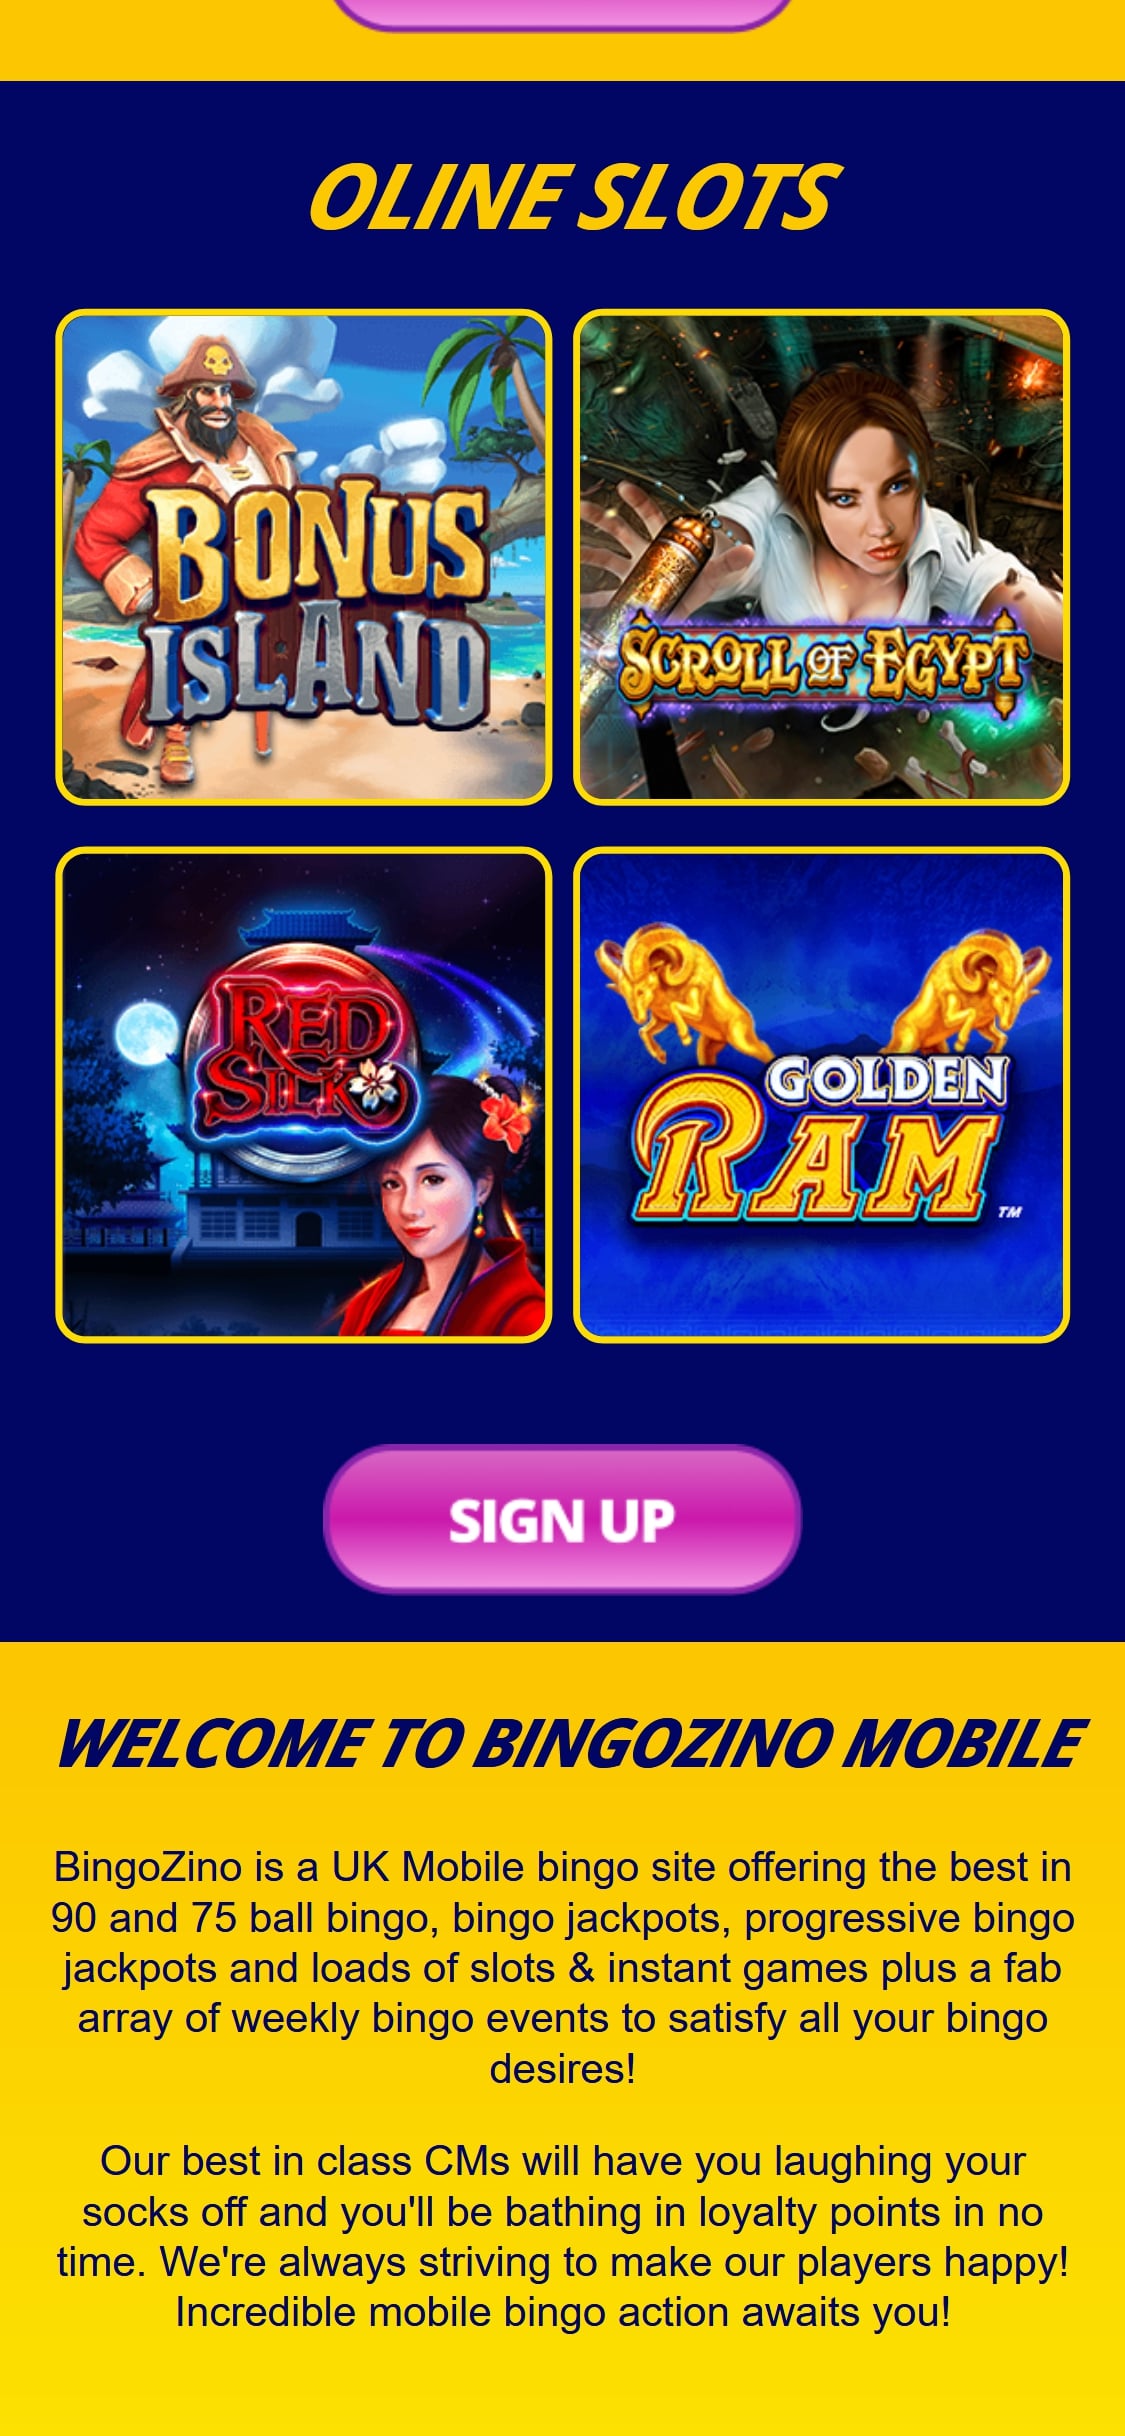 BingoZino Casino Mobile Games Review